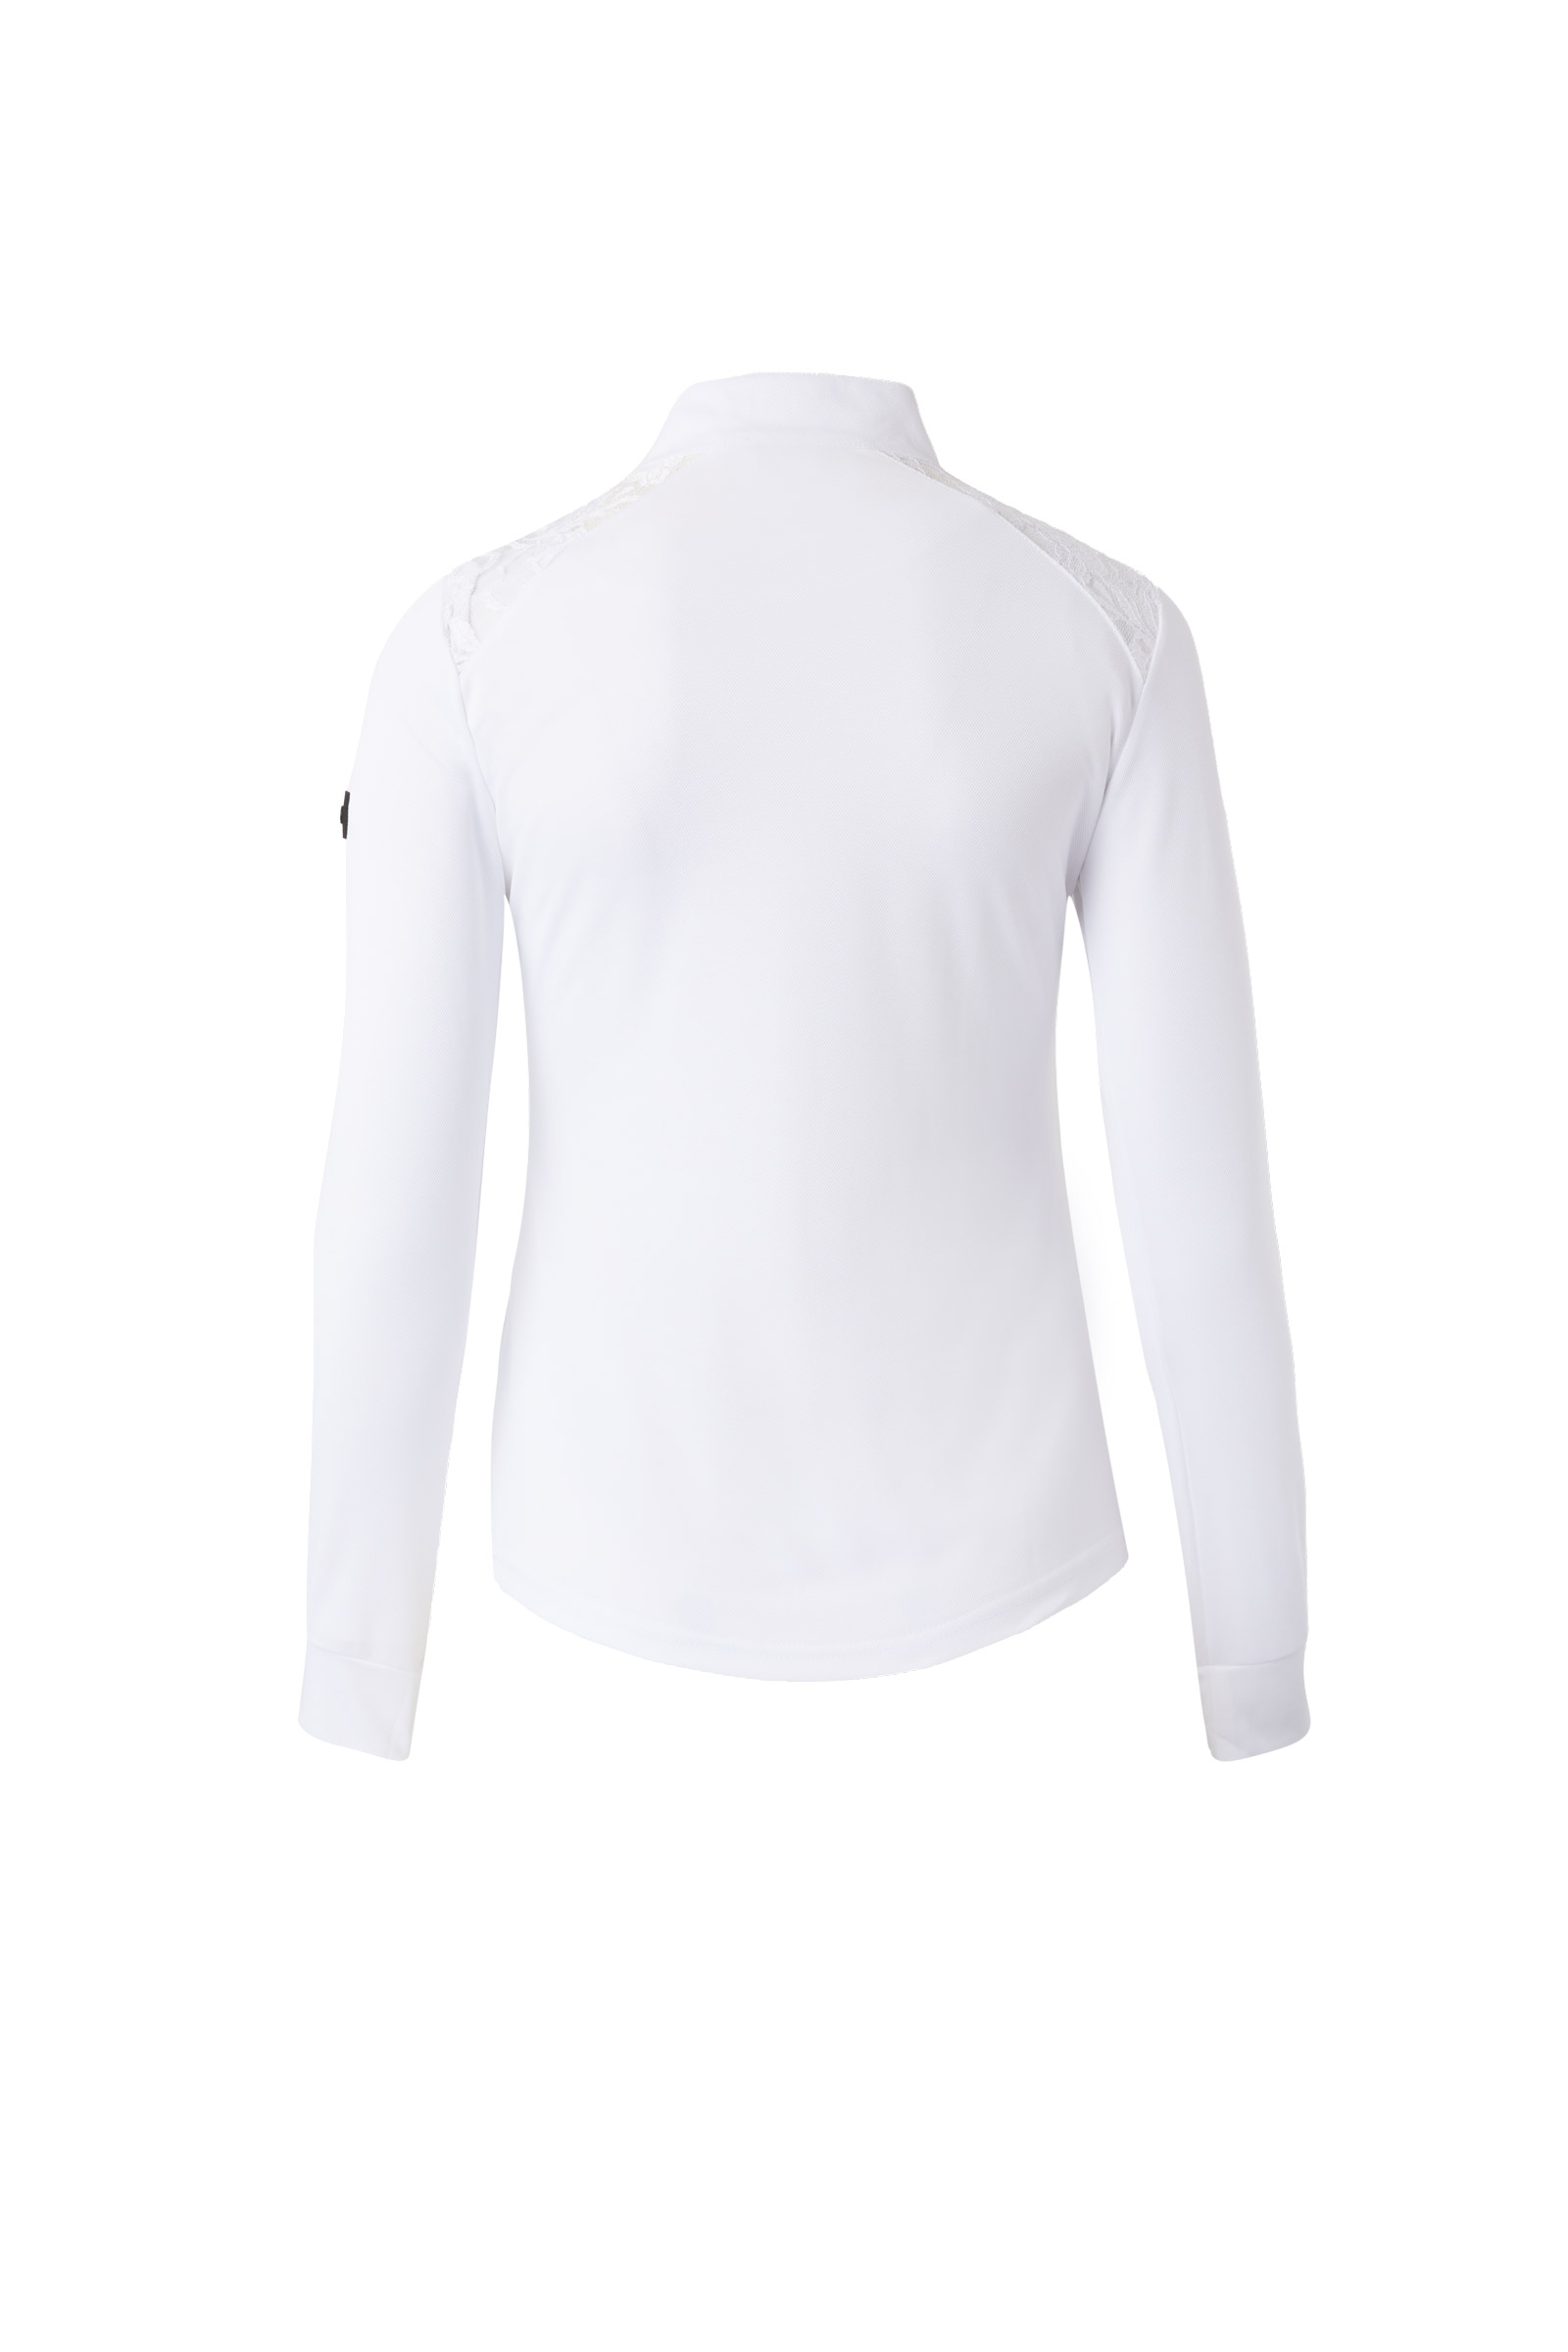 Sykooria Women's Long-Sleeved T-Shirt Sports Shirt Backless Long